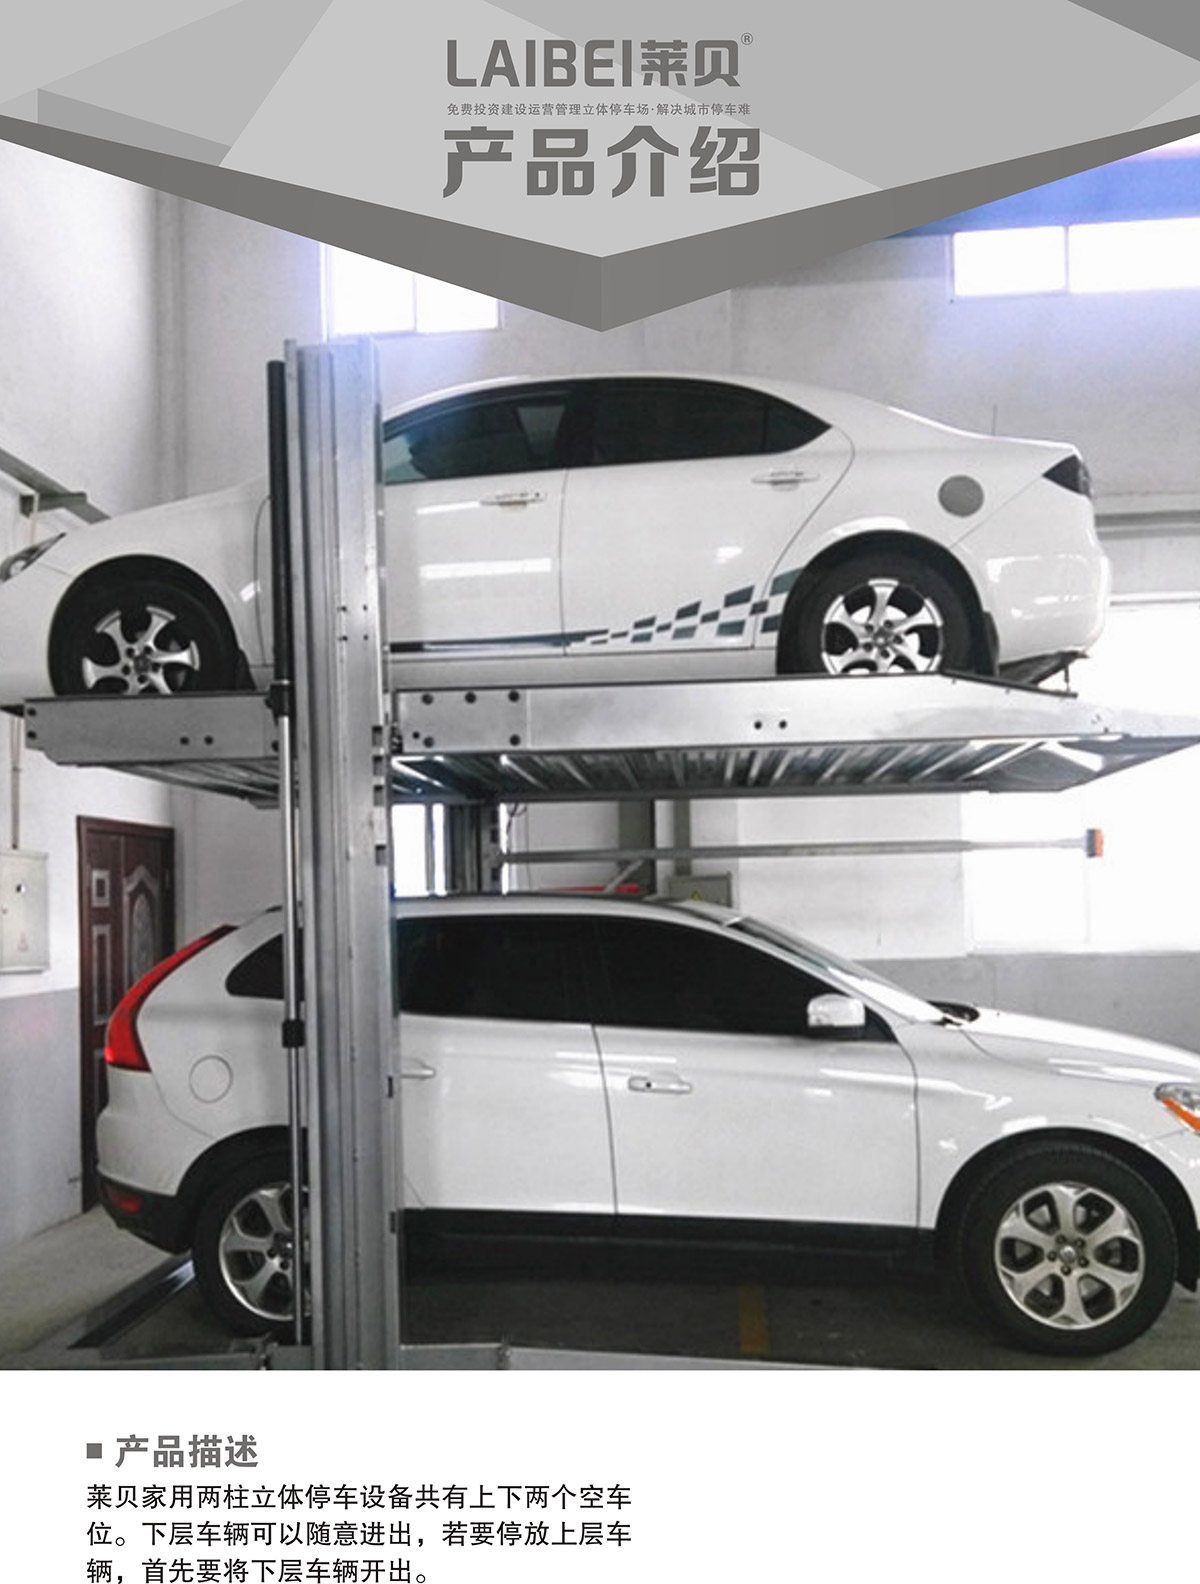 智能停车PJS两柱简易升降立体车库设备产品介绍.jpg